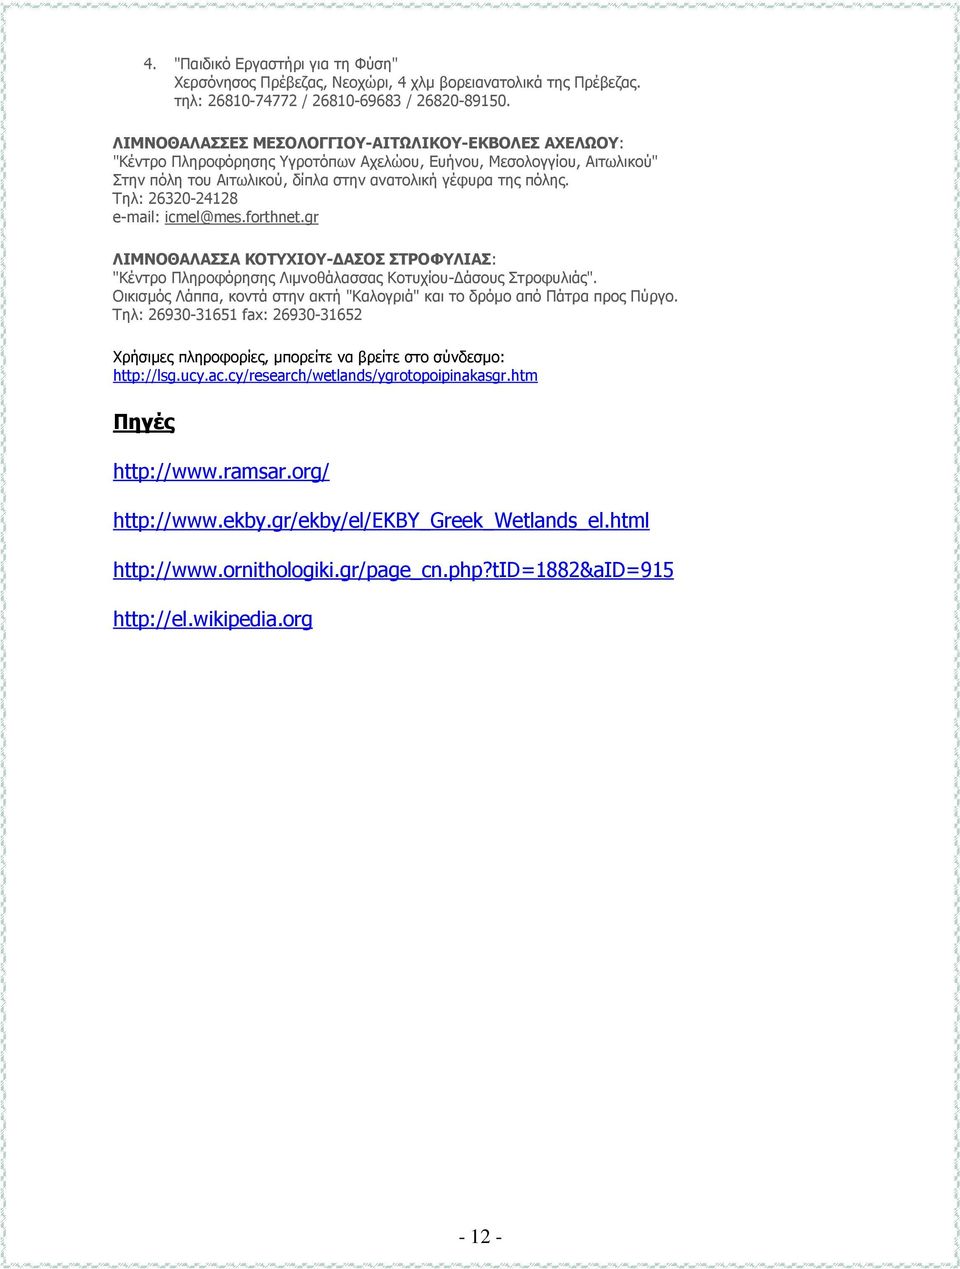 Τηλ: 26320-24128 e-mail: icmel@mes.forthnet.gr ΛΙΜΝΟΘΑΛΑΣΣΑ ΚΟΤΥΧΙΟΥ- ΑΣΟΣ ΣΤΡΟΦΥΛΙΑΣ: "Κέντρο Πληροφόρησης Λιµνοθάλασσας Κοτυχίου- άσους Στροφυλιάς".